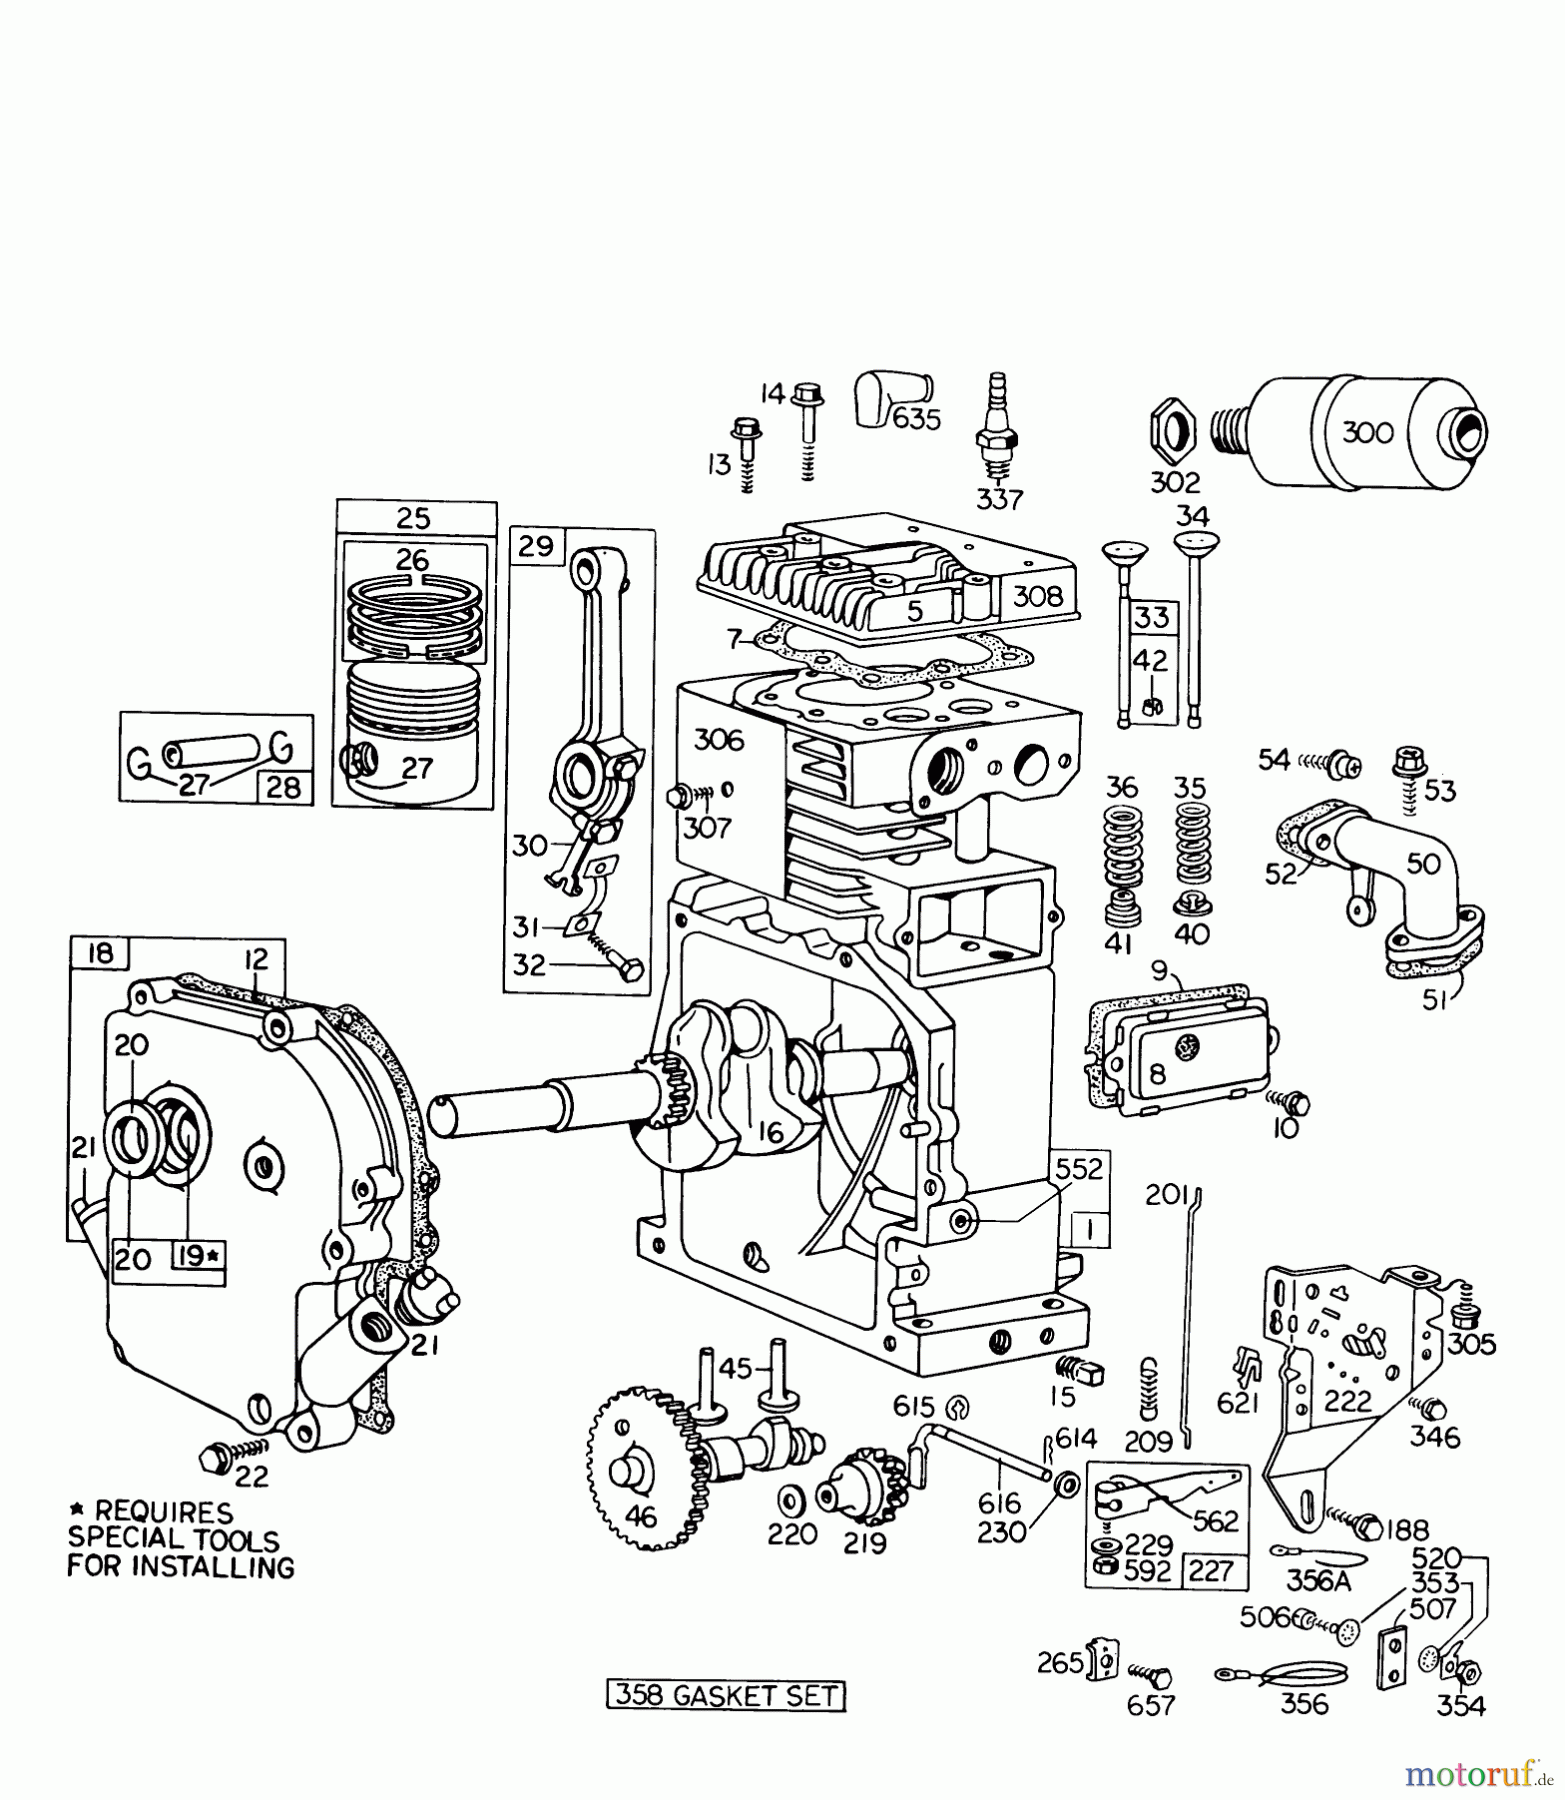  Toro Neu Snow Blowers/Snow Throwers Seite 1 31813 (832) - Toro 832 Snowthrower, 1974 (4000001-4999999) ENGINE MODEL NO. 190402 TYPE 0754 BRIGGS AND STRATTON